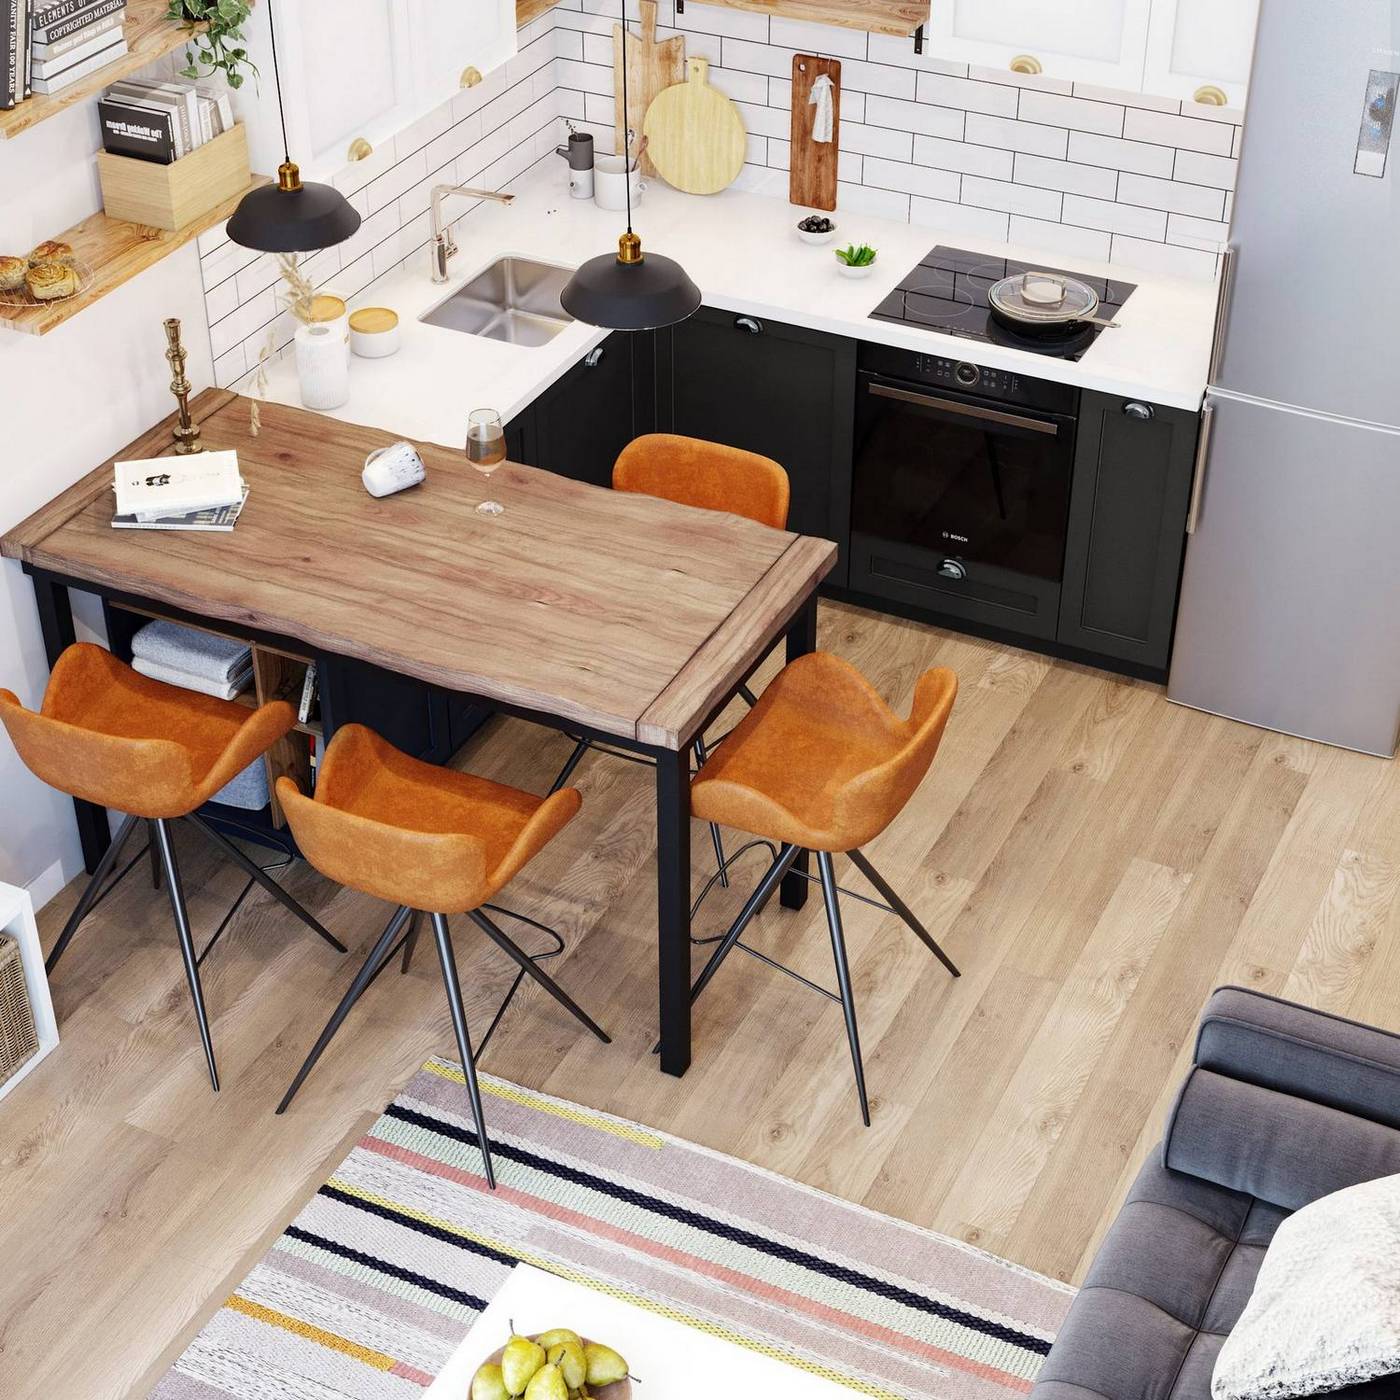 Phòng bếp nhỏ xinh thiết kế kiểu chữ L - giải pháp hoàn hảo cho không gian bếp vừa và nhỏ. Tủ bếp trên và dưới sử dụng màu trắng và xám đen cho cái nhìn tương phản, hiện đại.